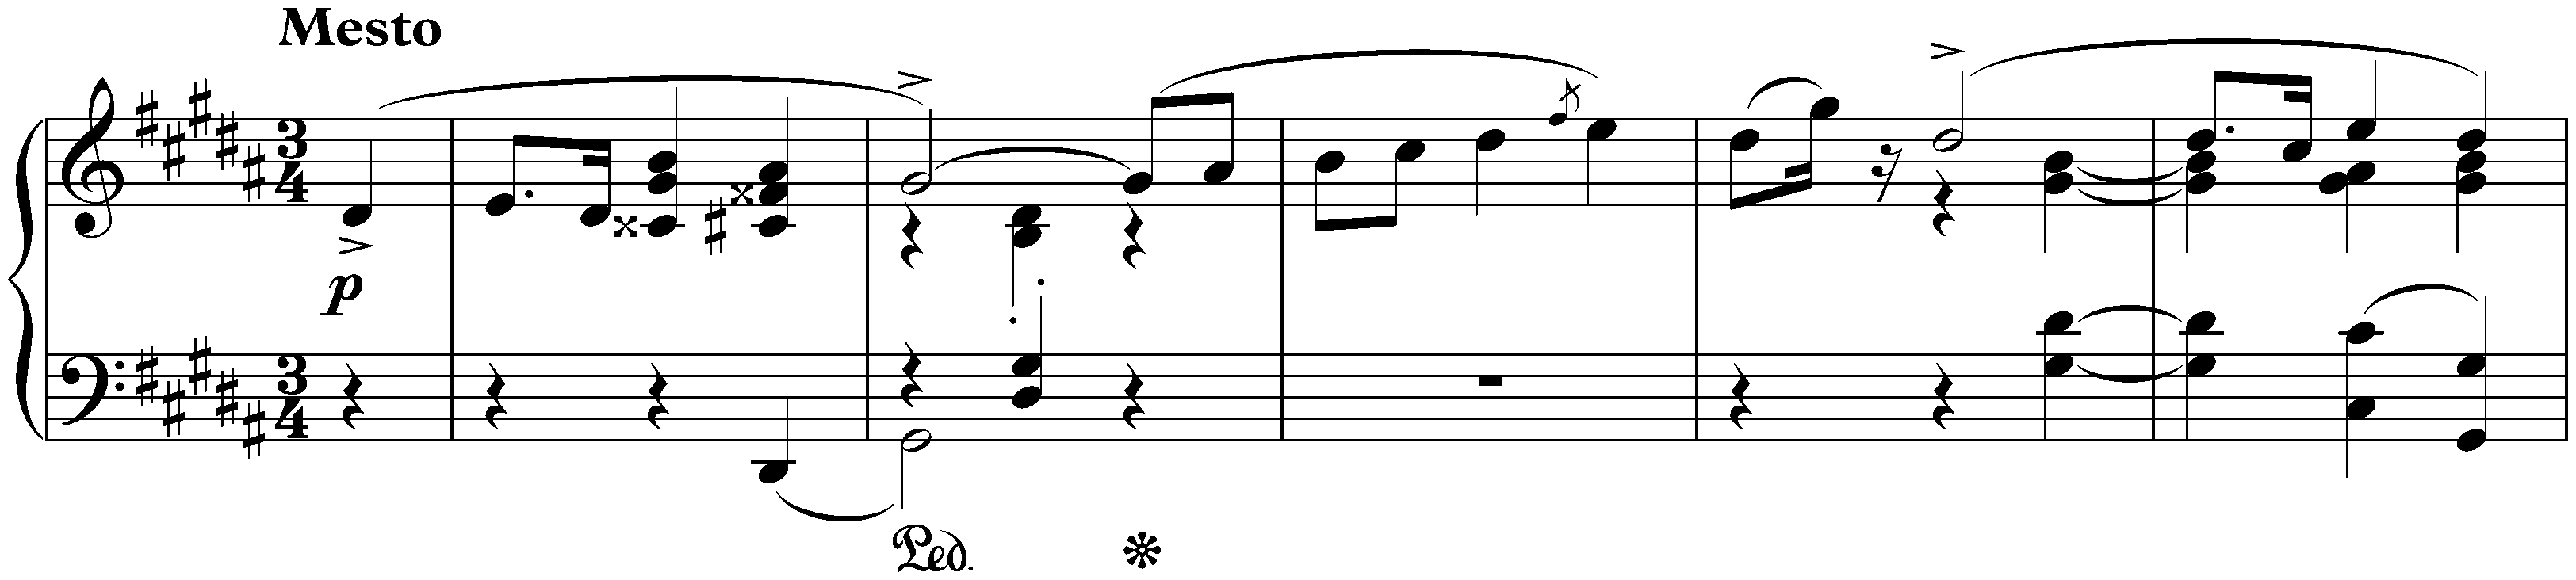 Four Mazurkas, op. 33; 1. G-sharp minor